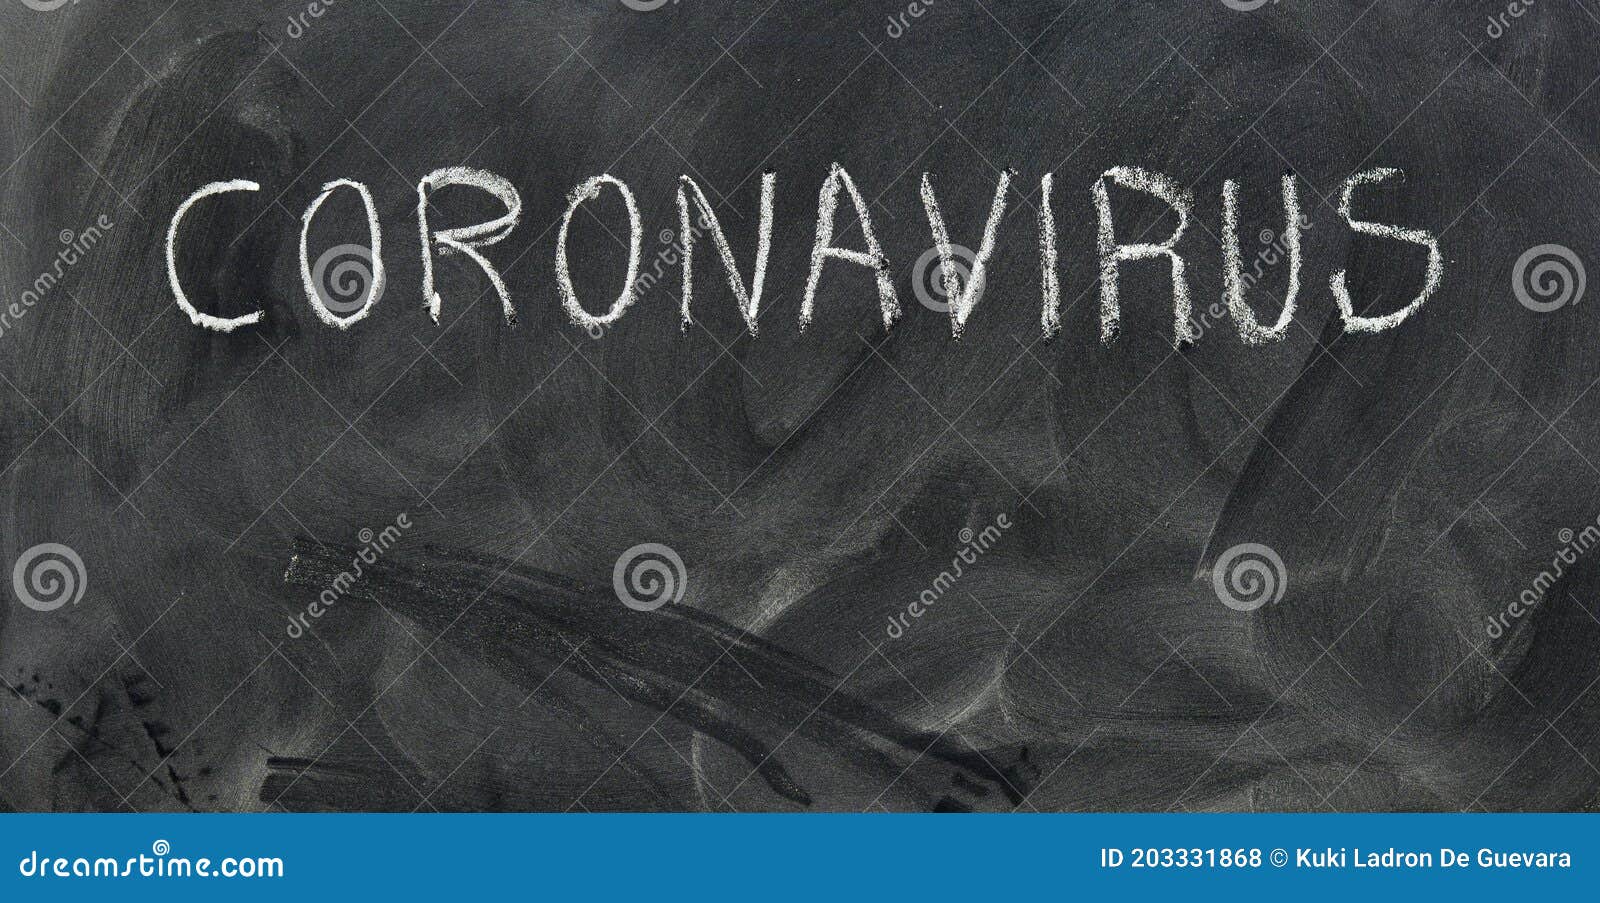 word coronavirus, written on the blackboard